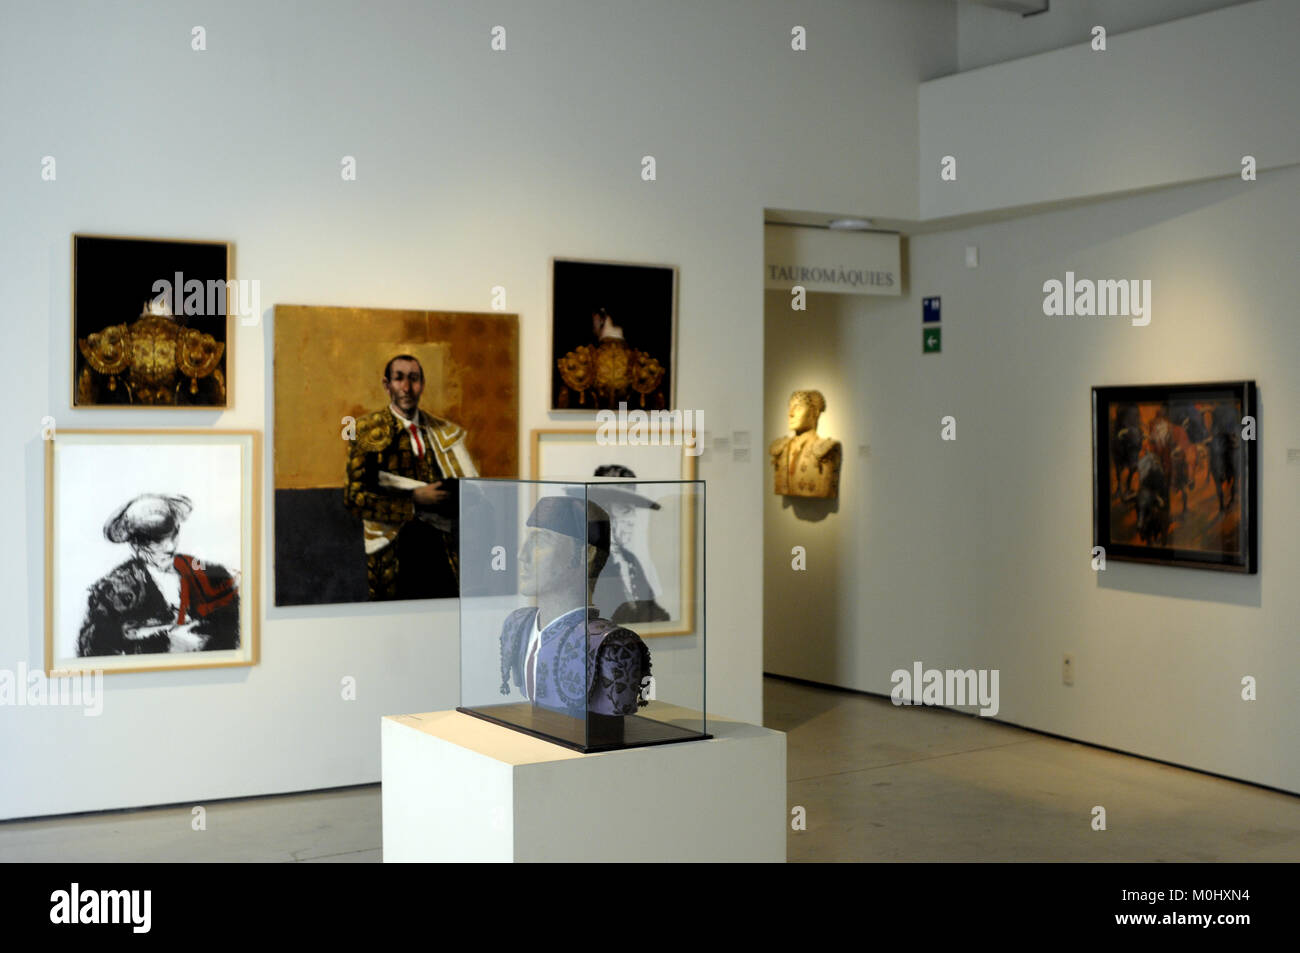 Le Musée, la dernière Framis Projet de la Fondation Vila Casas, est un centre dédié à la diffusion de la peinture catalane contemporaine. Situé à Banque D'Images